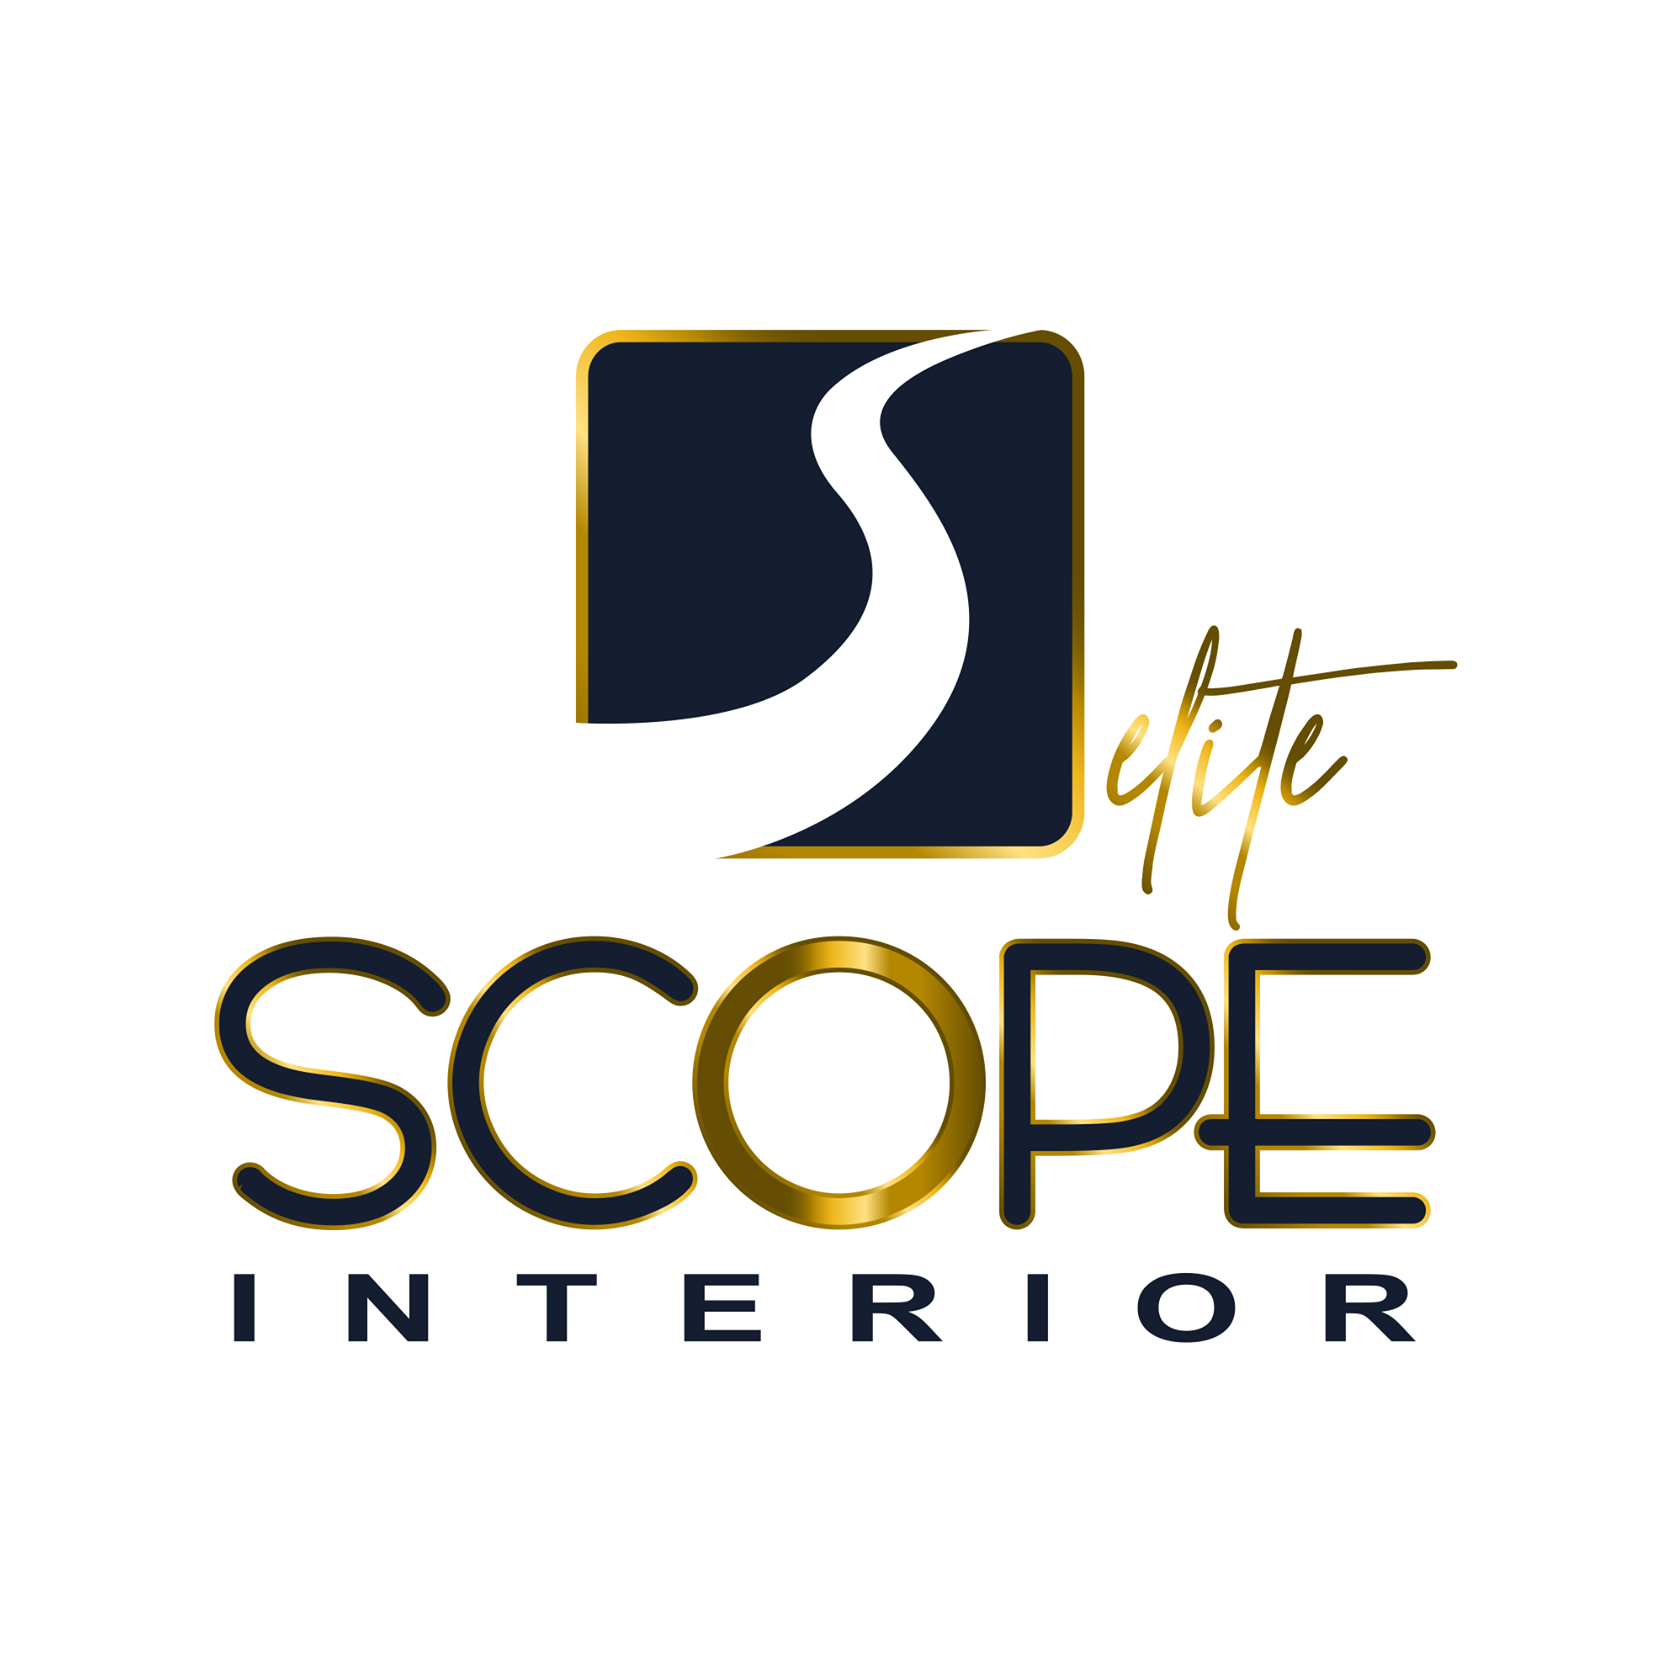 Scope Interior - logo